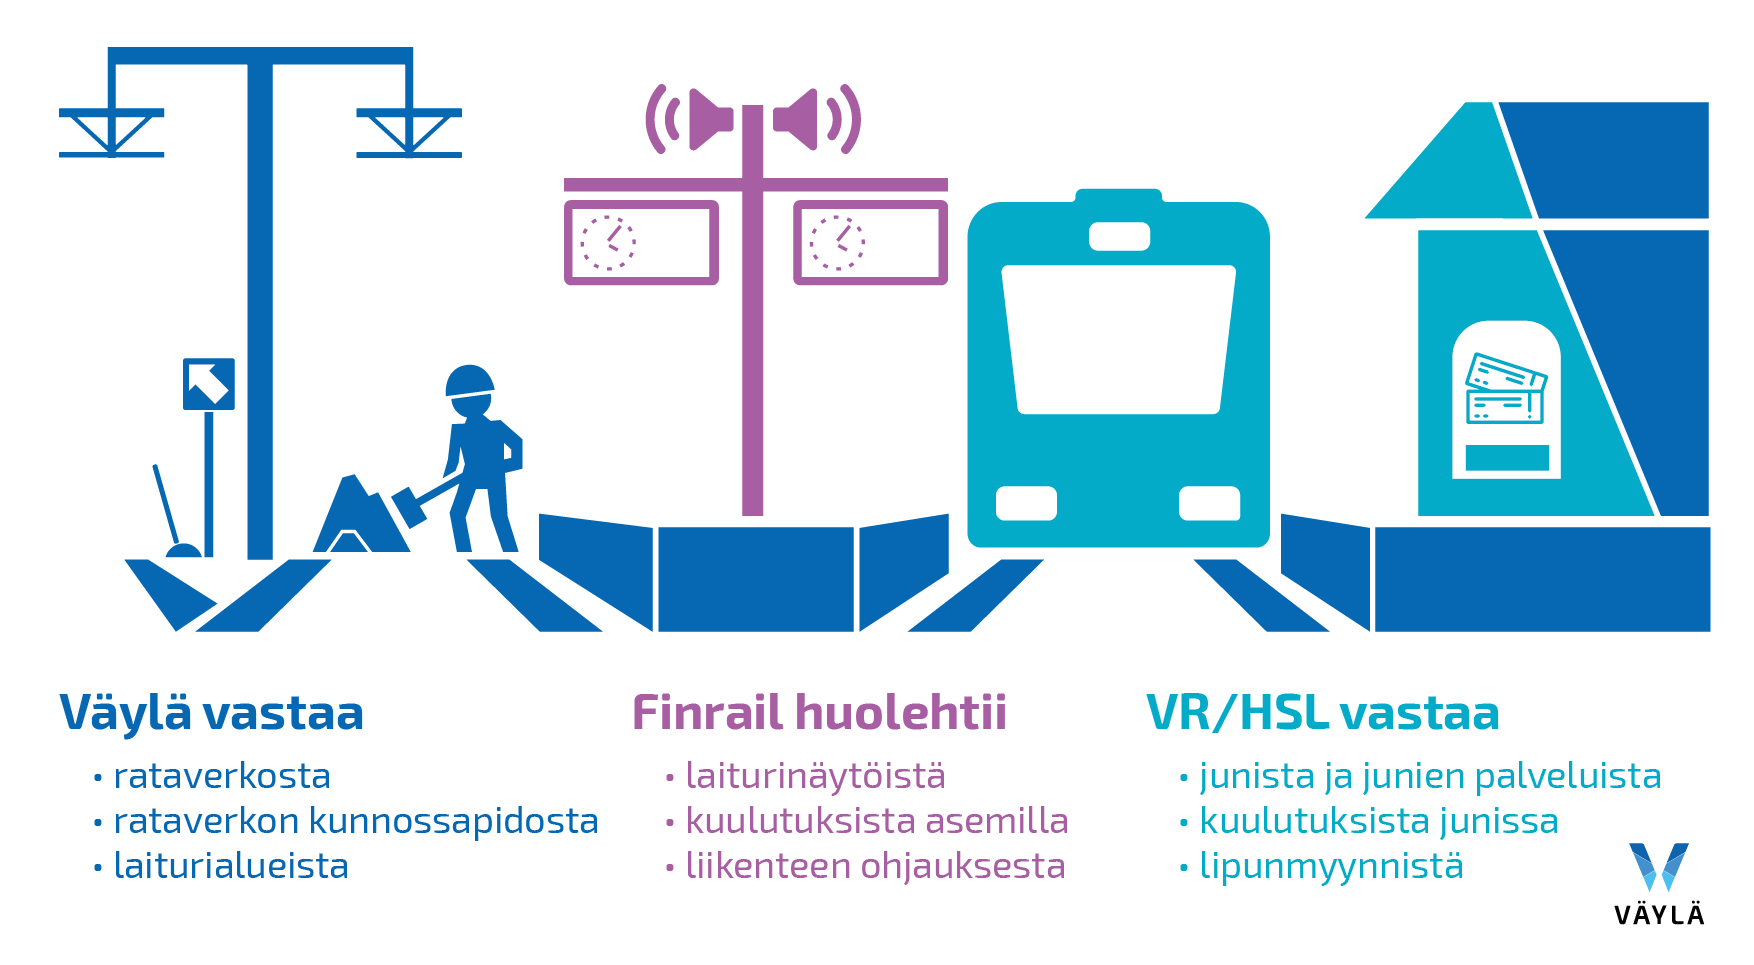 Kuvassa näytetään, miten vastuut jakautuvat rautateillä Suomessa.